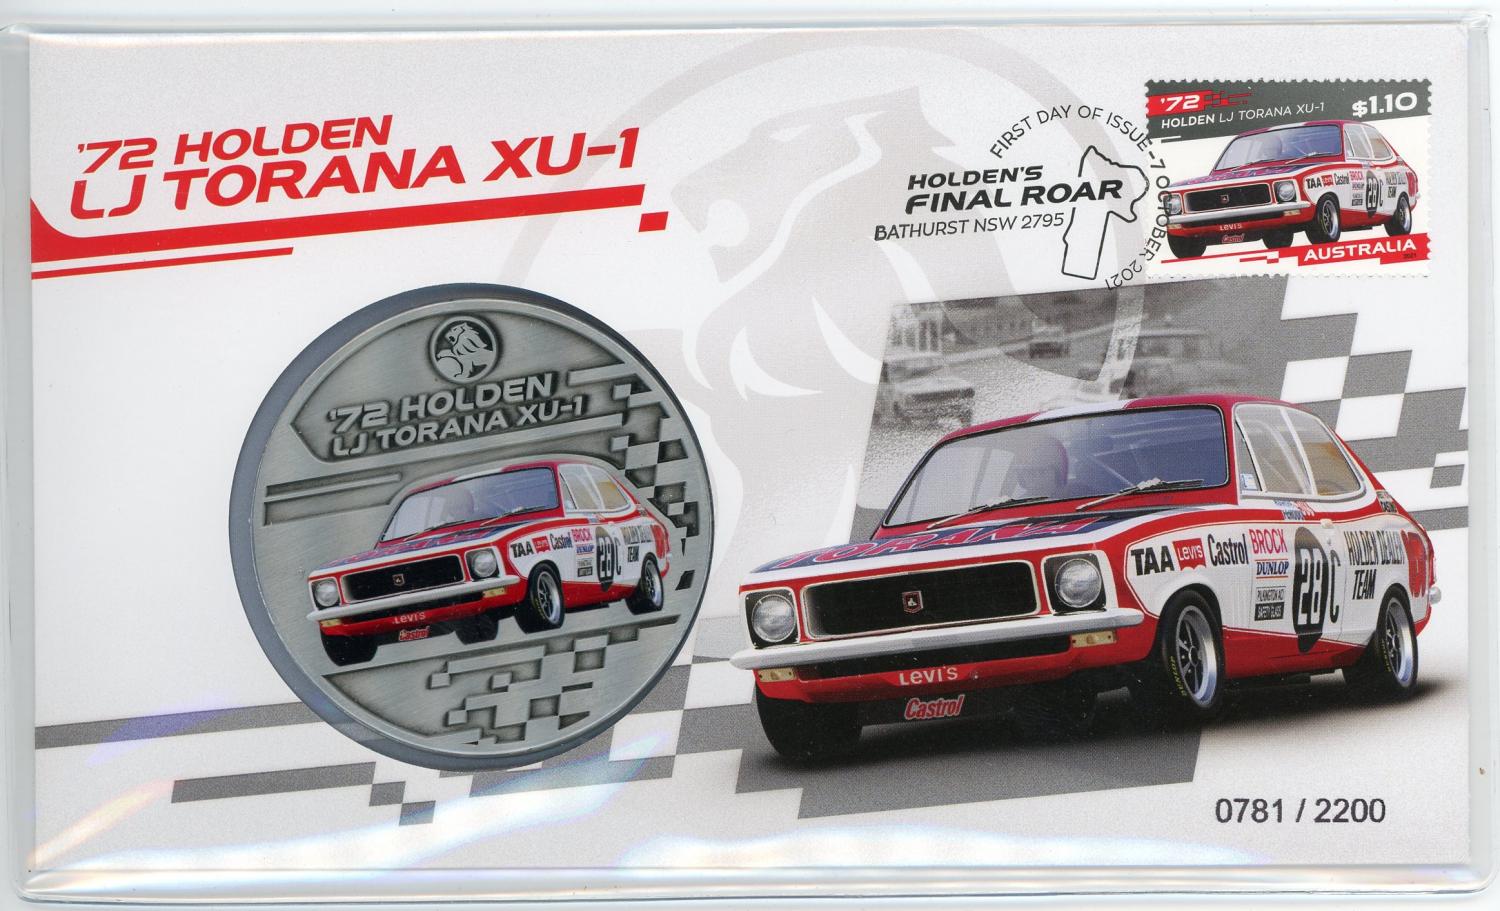 Thumbnail for 2021 Holdens Final Roar Medallic PNC - 1972 LJ Tonana XU-1